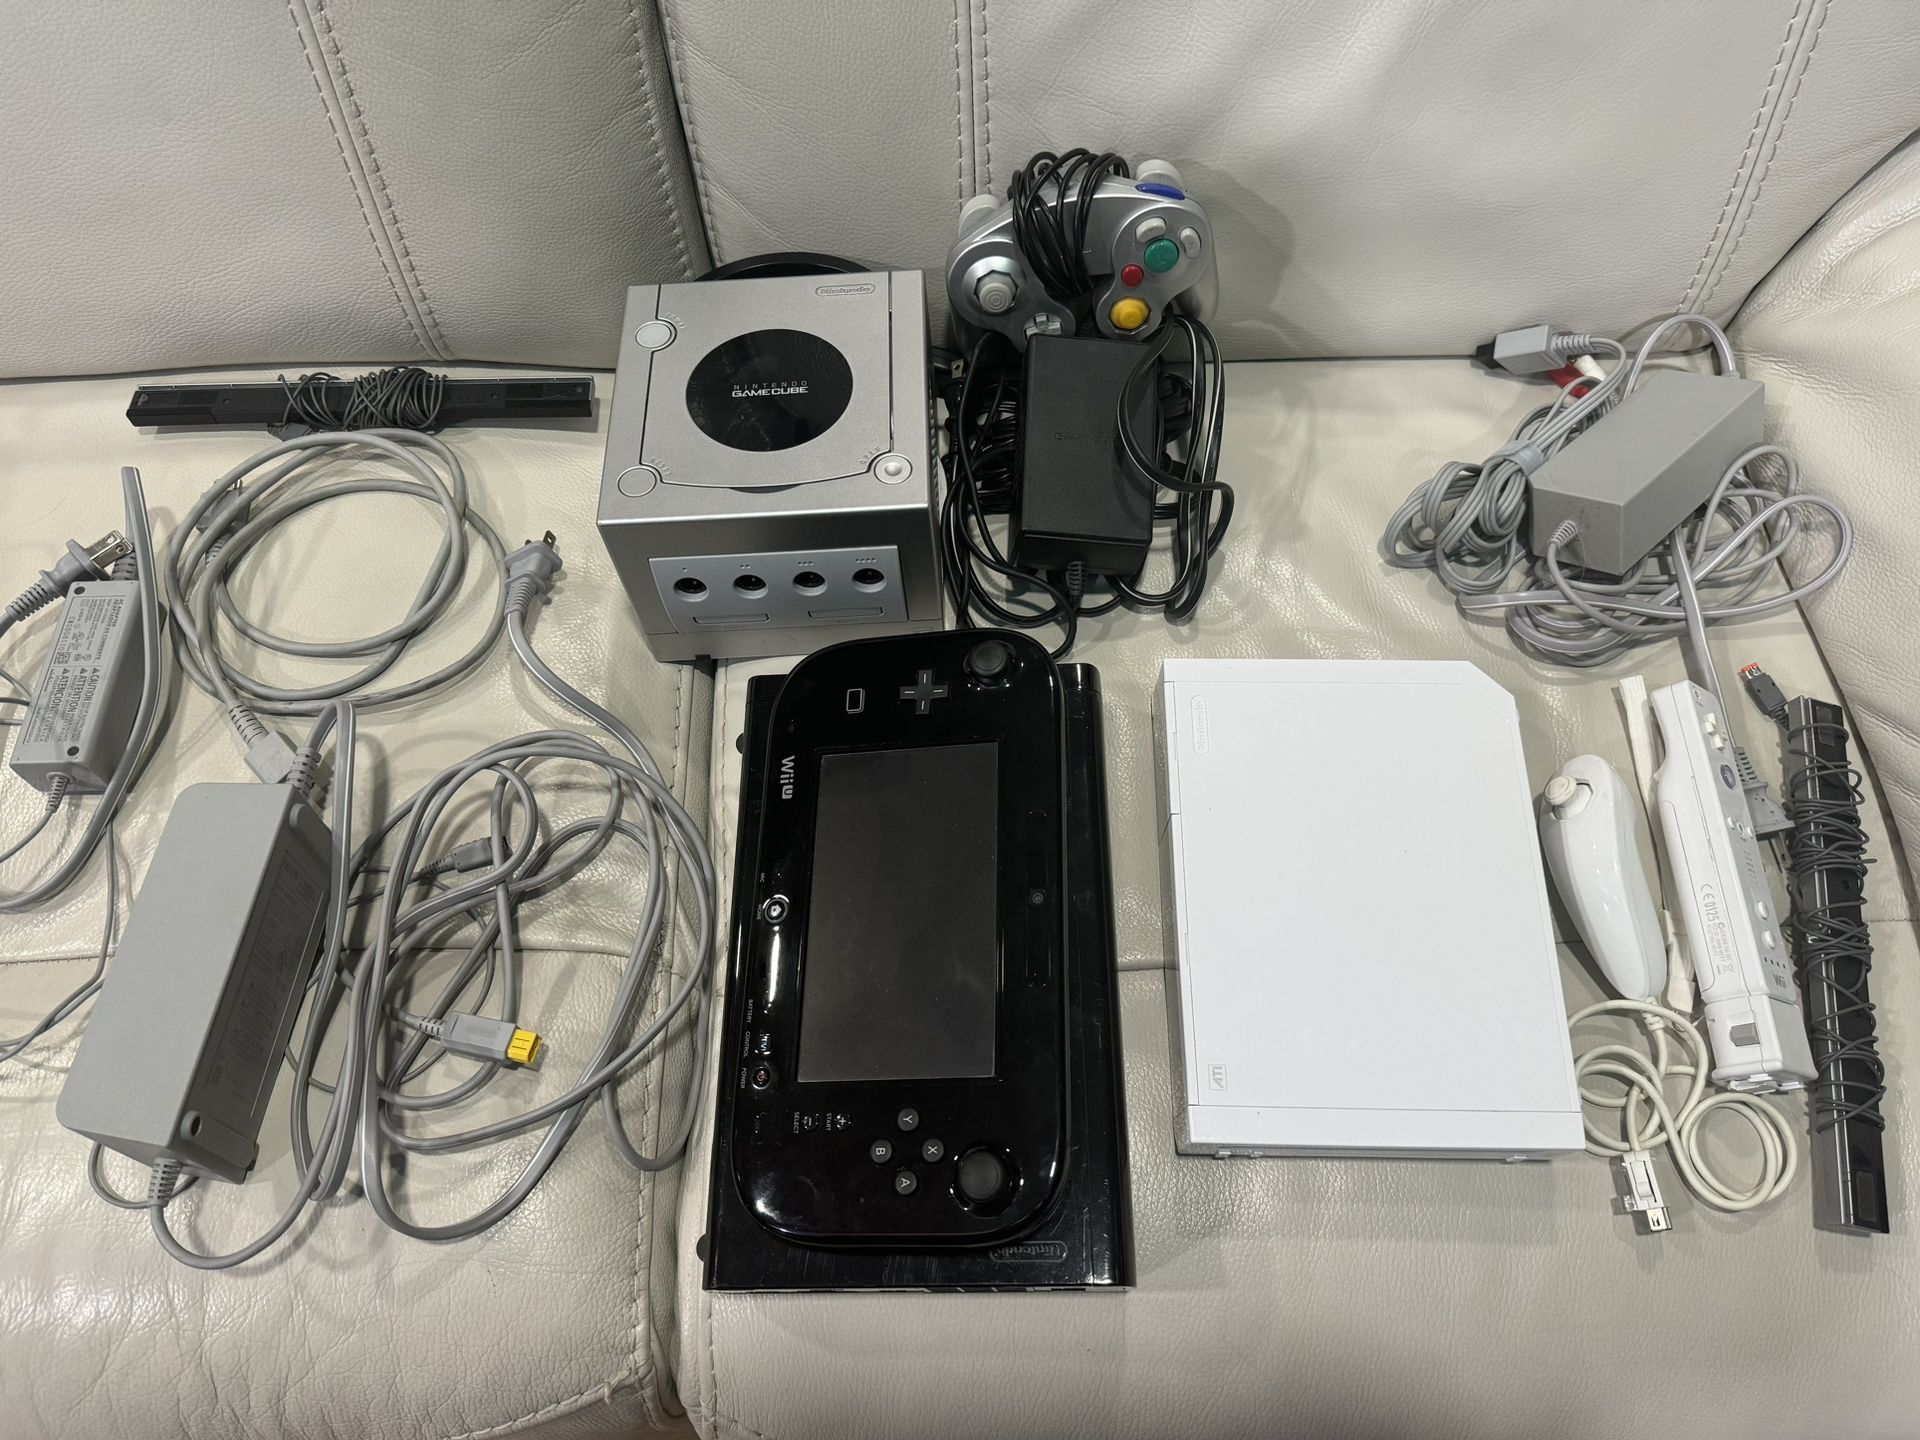 Bundle Of Nintendo GameCube, Wii And WiiU 